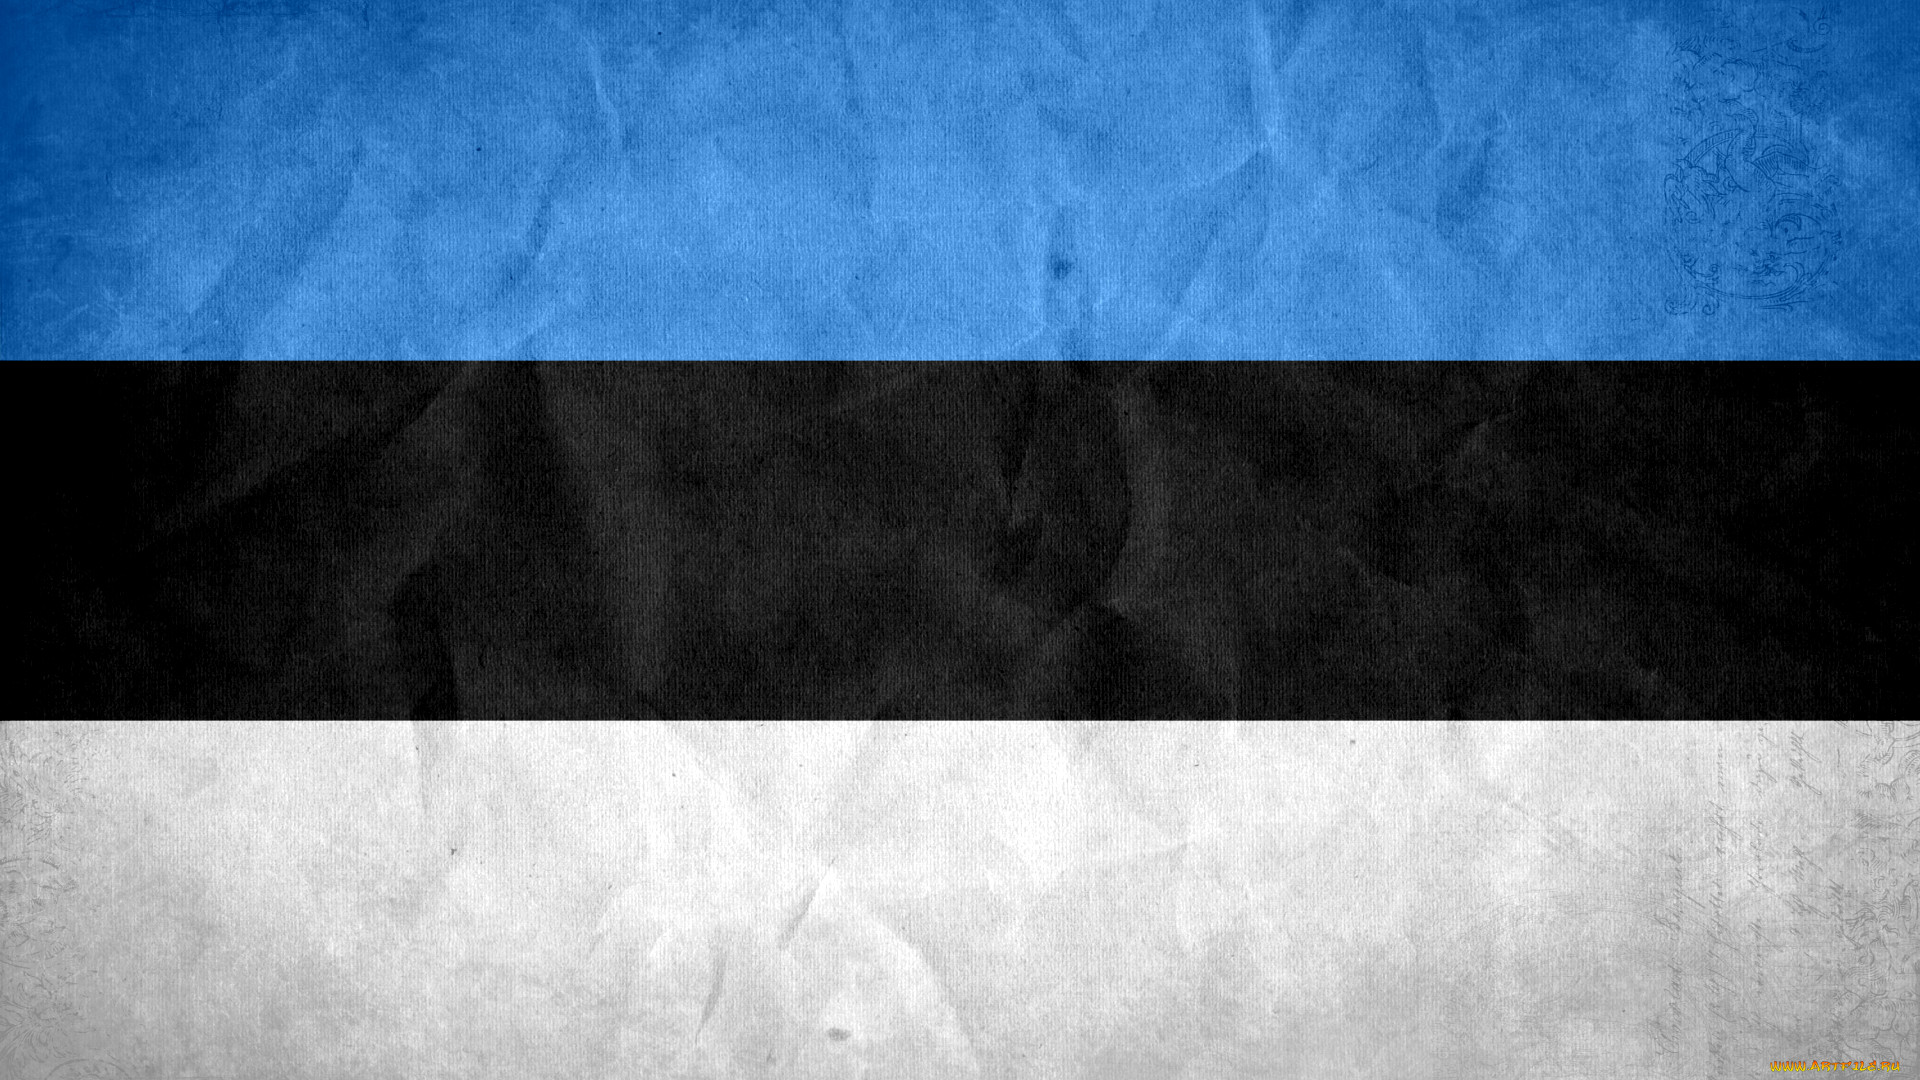 герб и флаг эстонии